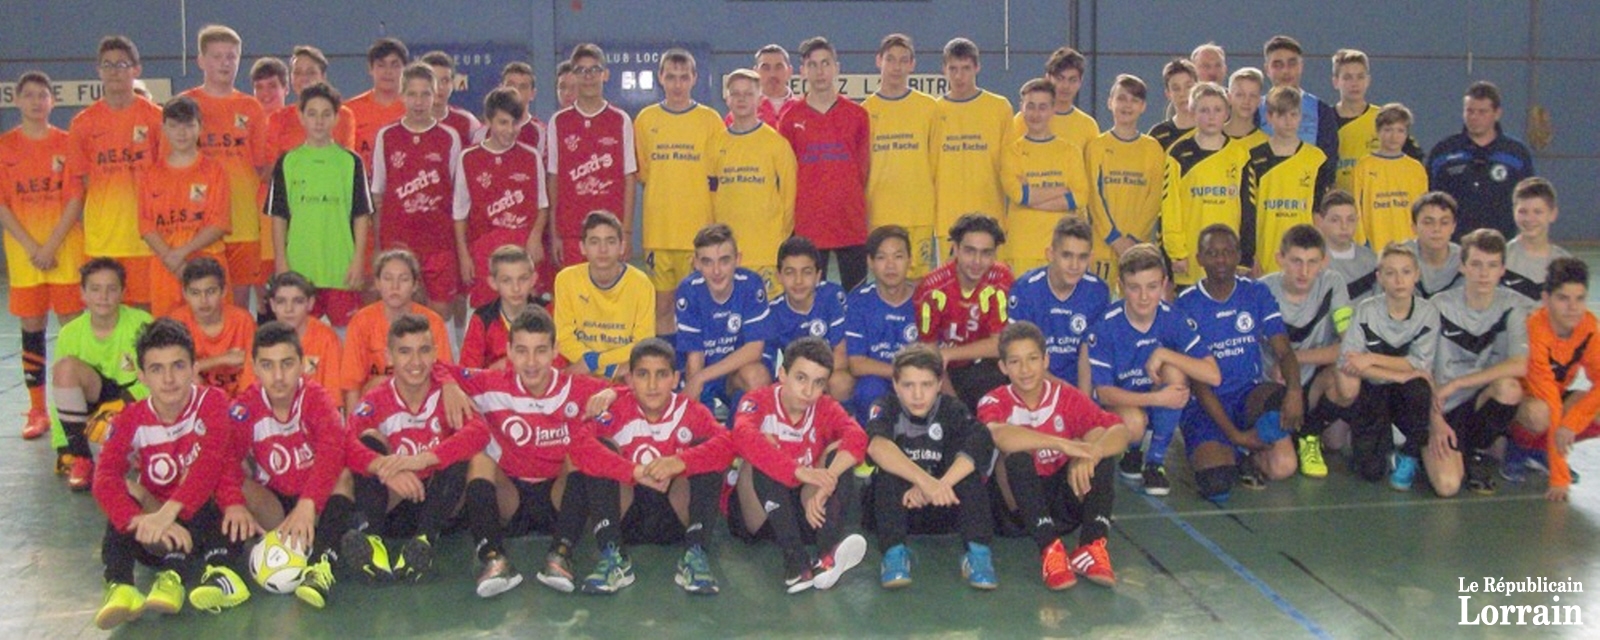 Les équipes engagées au tournoi des U15.